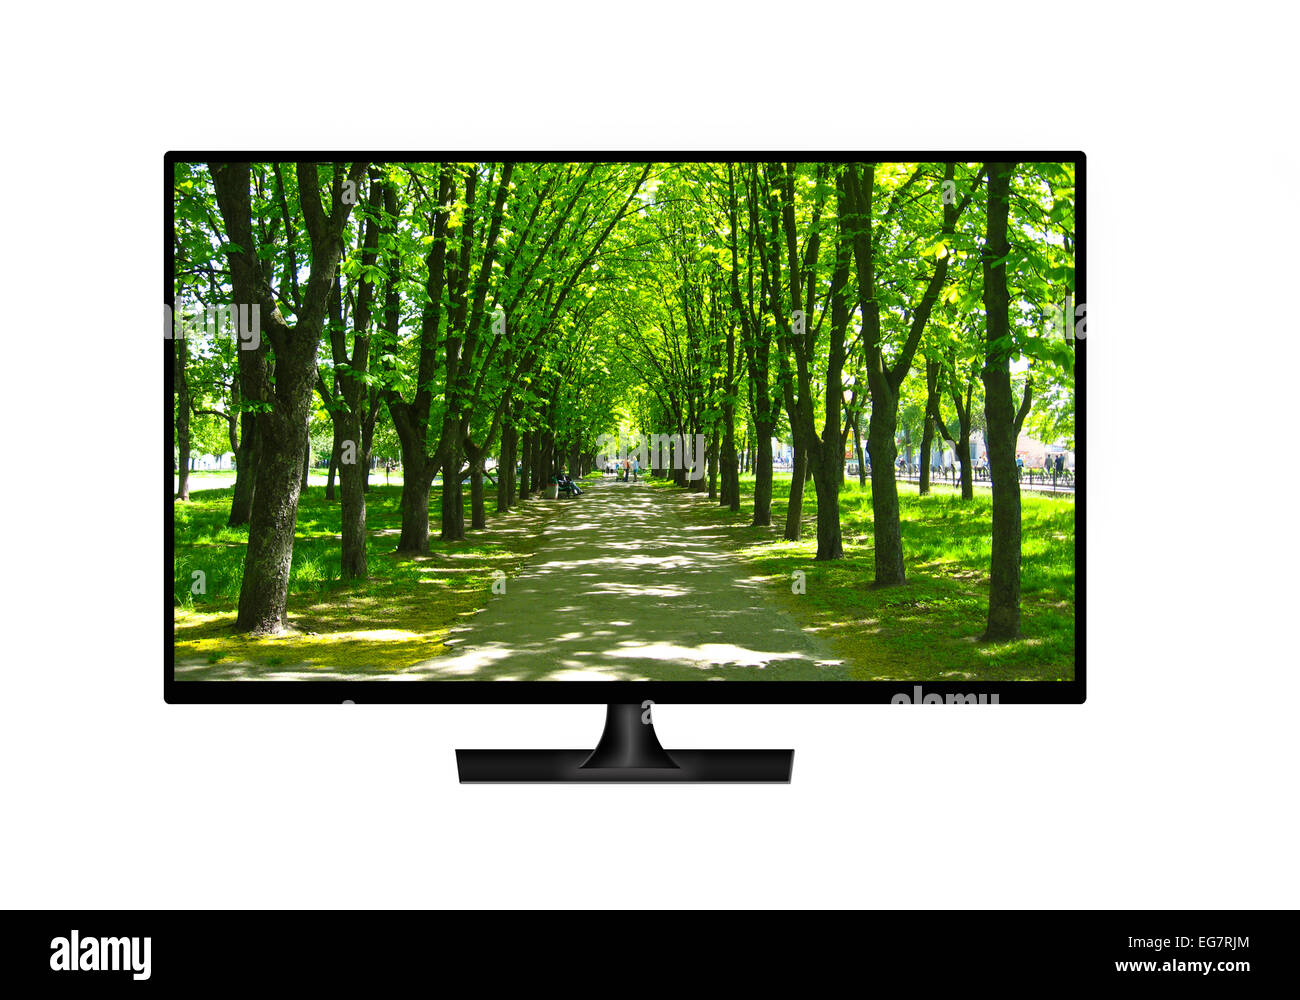 Moderno Televisore con immagine del bellissimo parco isolato su sfondo bianco Foto Stock